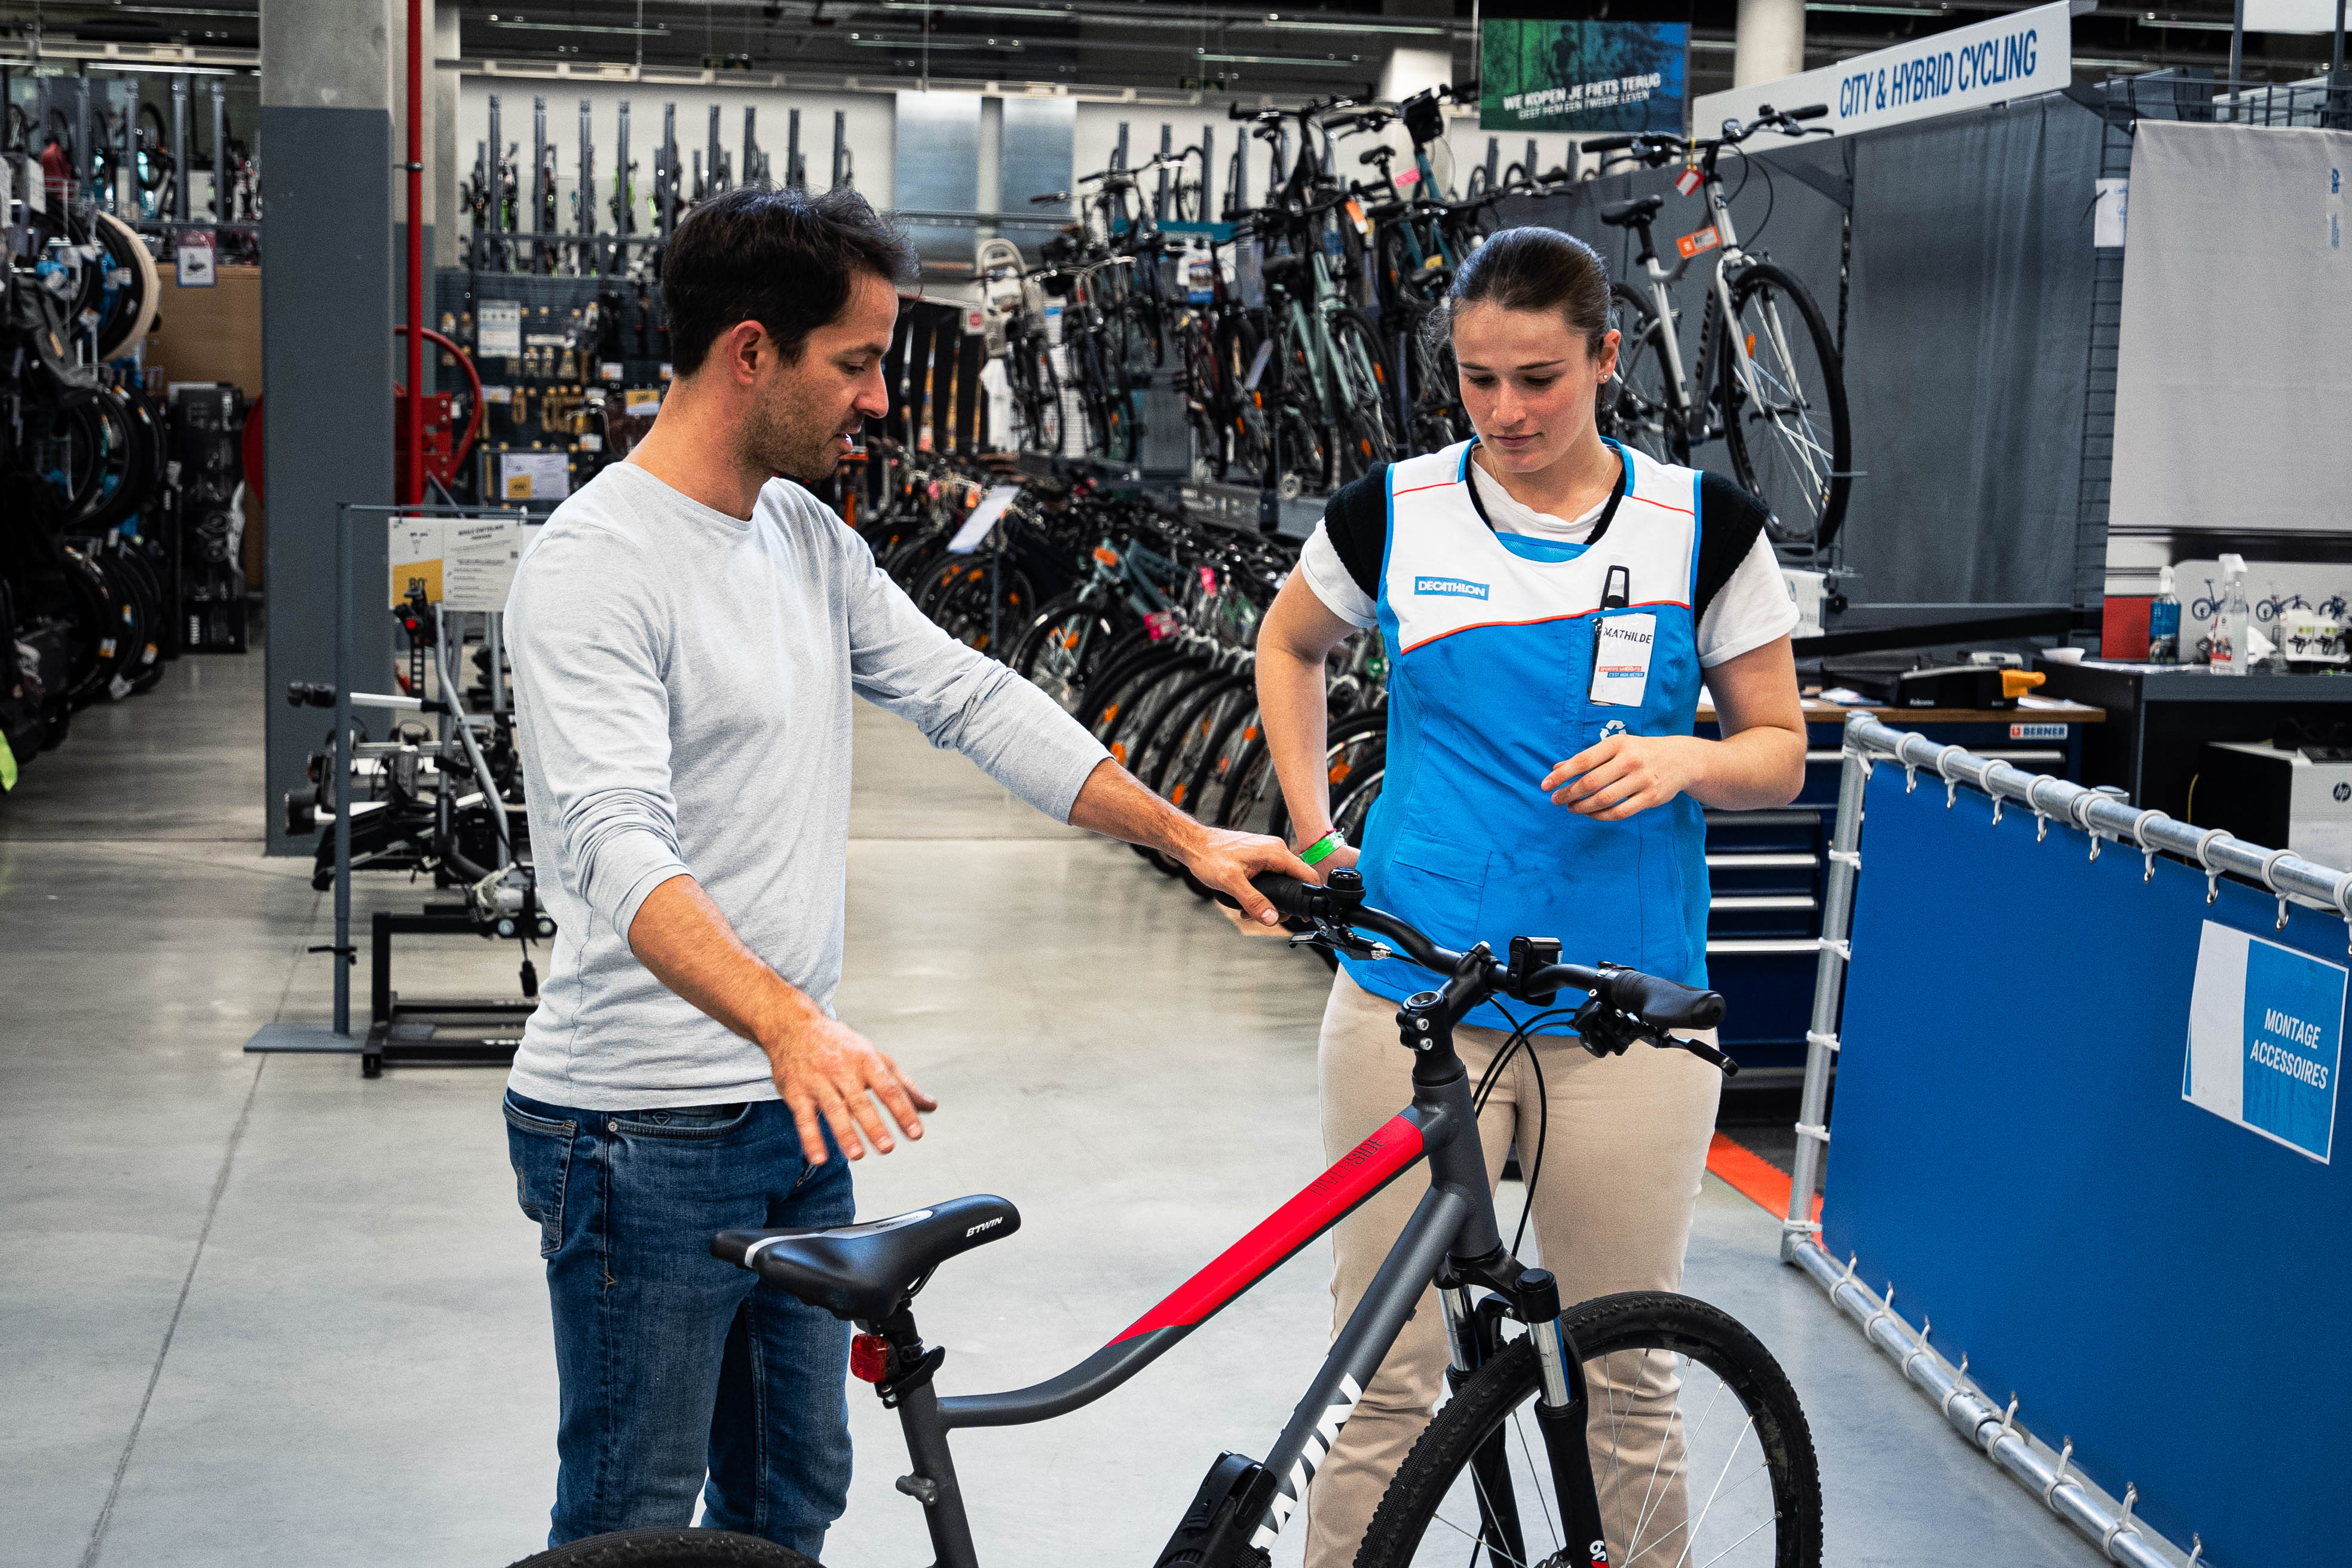 Verbeelding postkantoor handicap Decathlon strijdt met gerecycleerde fietsen tegen transportarmoede